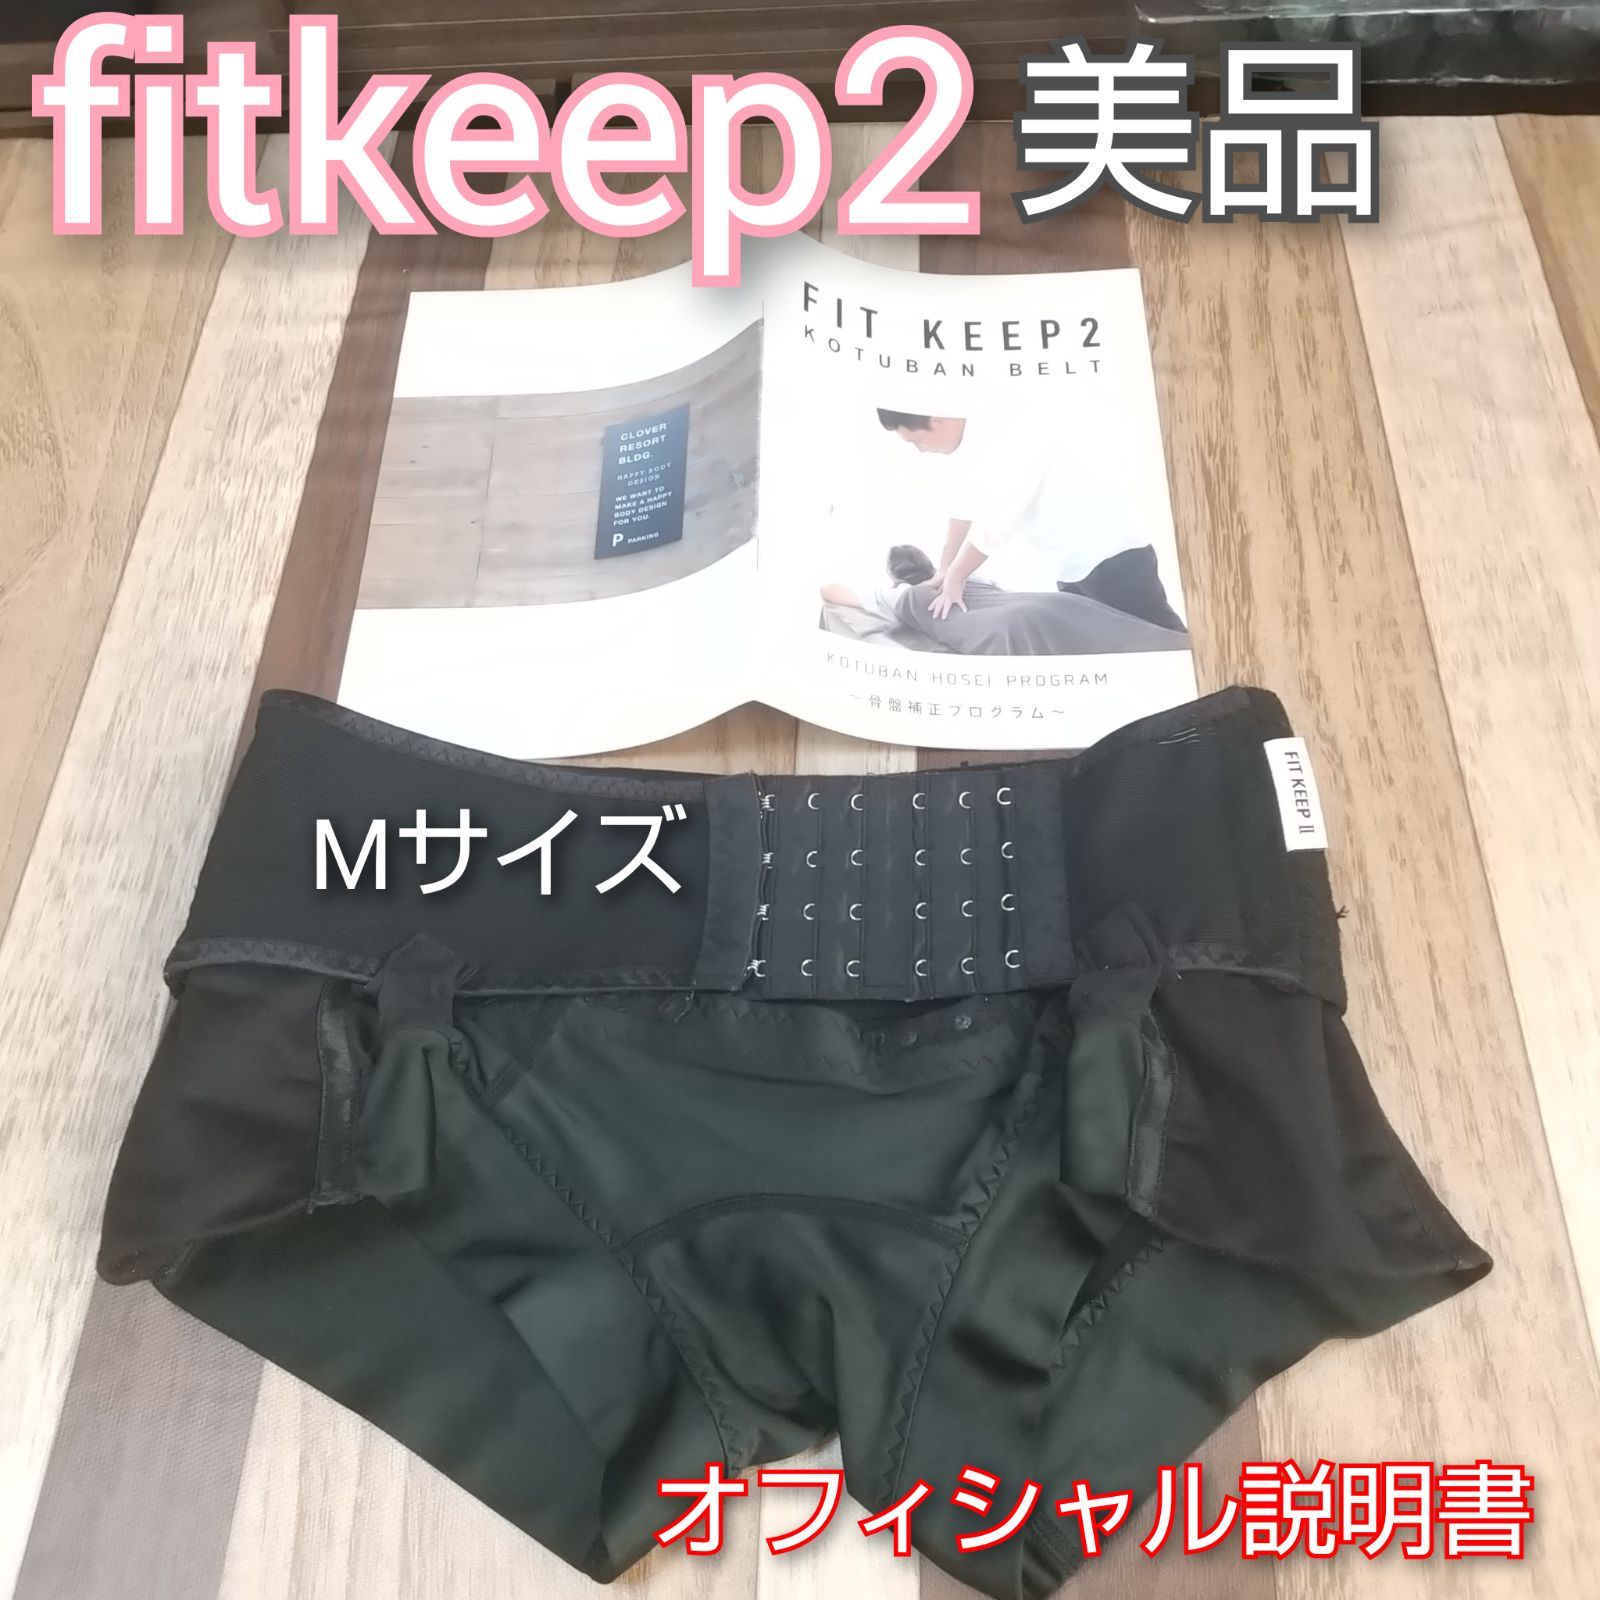 fitkeep2 Mサイズ - マタニティ